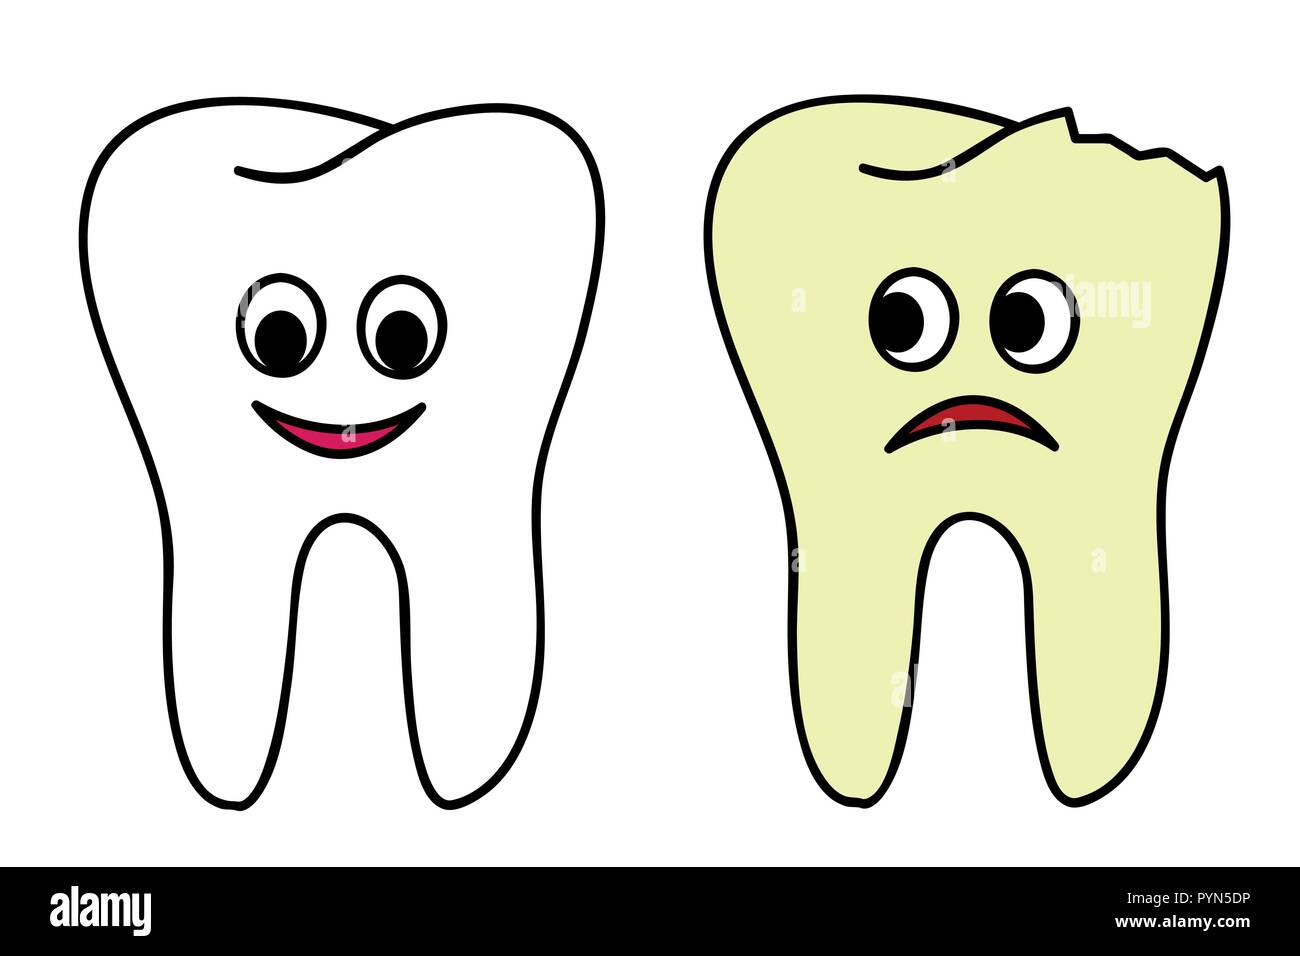 En bonne santé et dent cassée cartoon vector illustration EPS10 Illustration de Vecteur